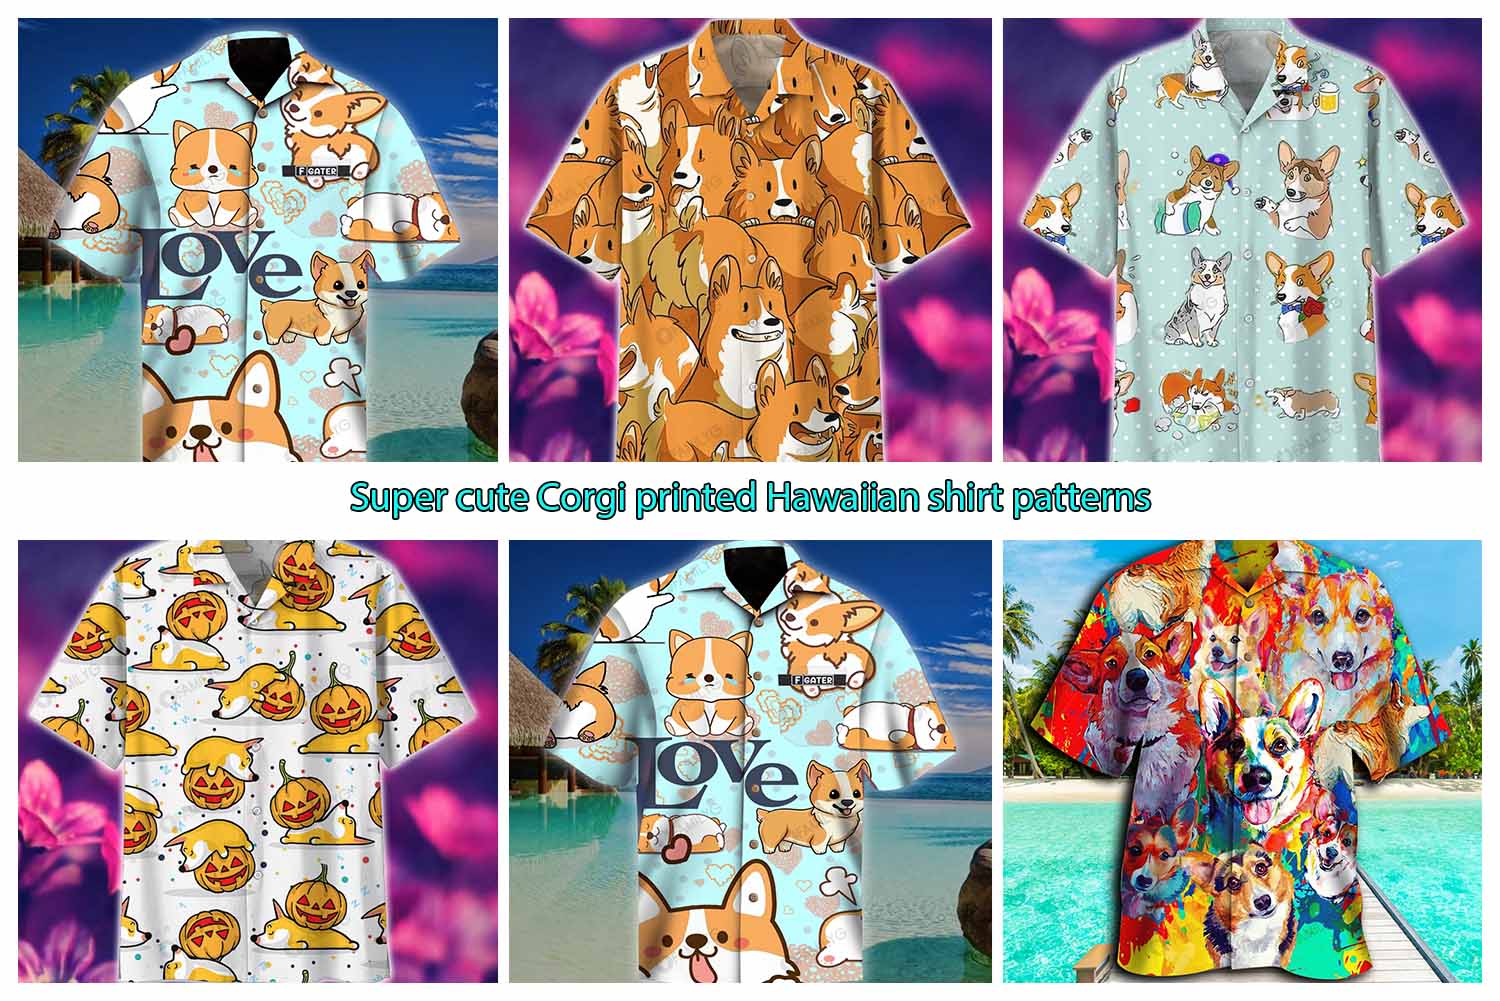 Super cute Corgi printed Hawaiian shirt patterns